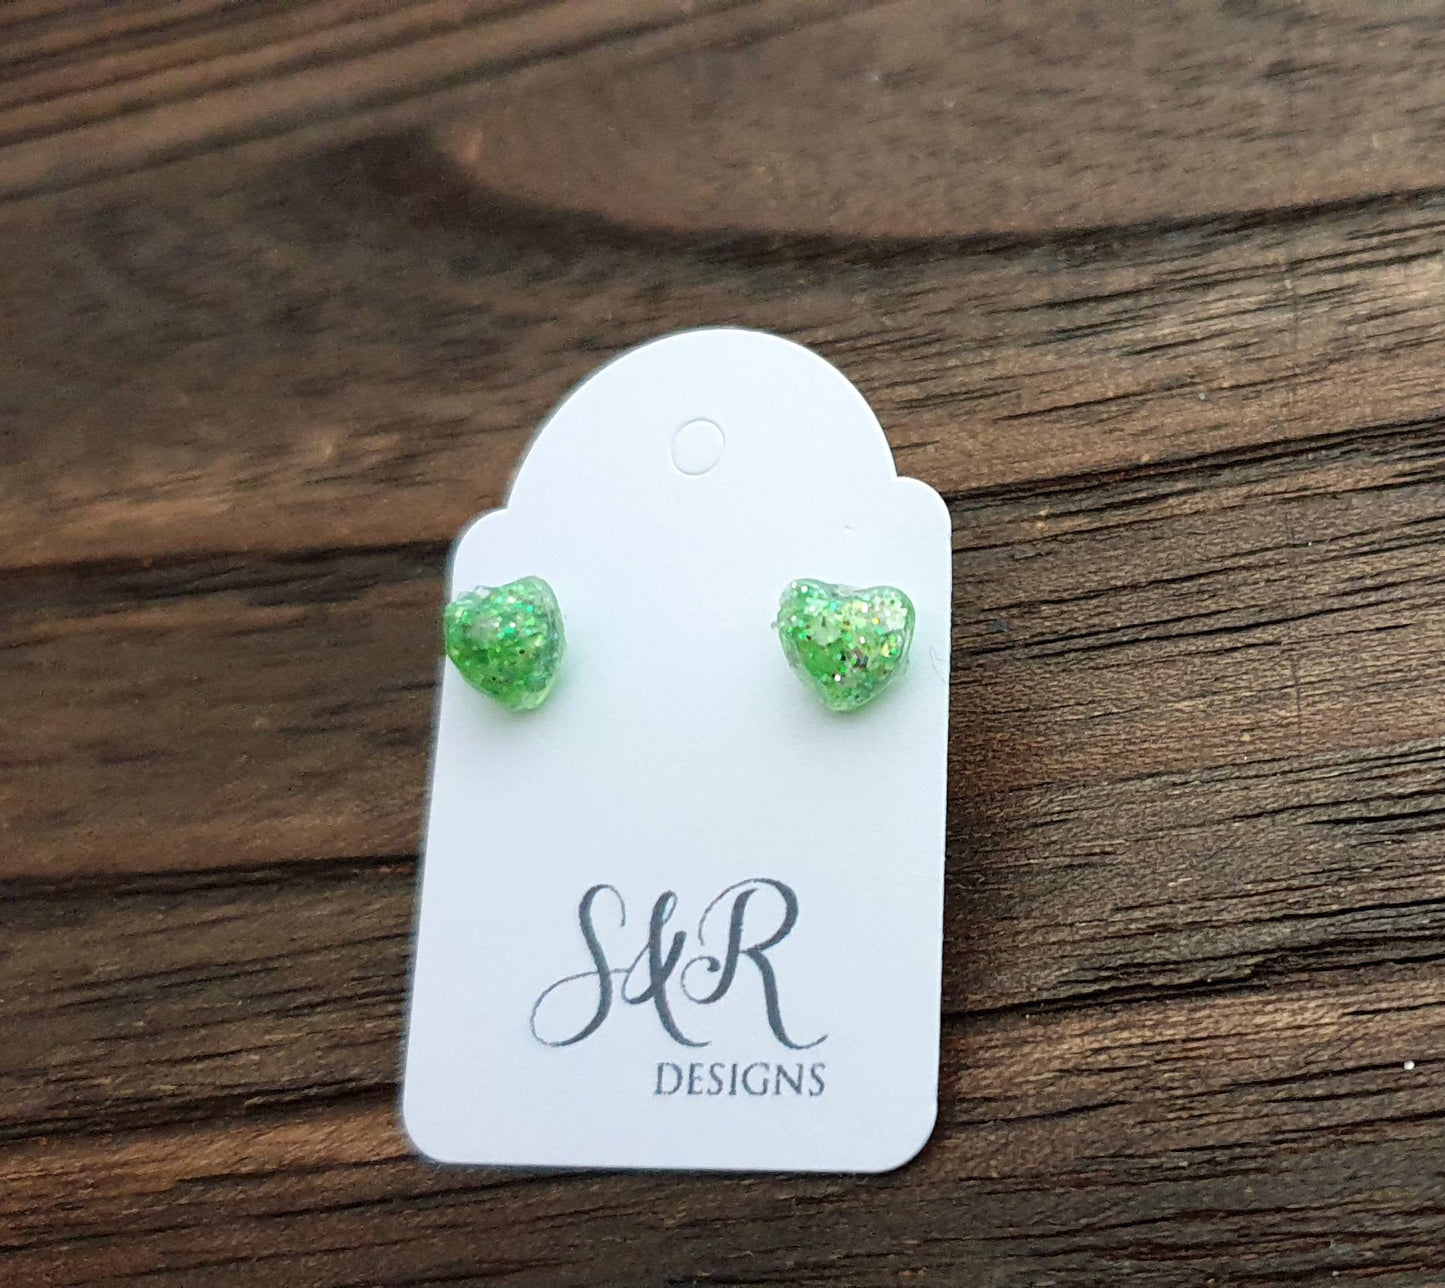 Mini Heart Resin Stud Earrings, Glitter Earrings, Green White Silver Glitter Earrings made with Stainless Steel. 6mm Minimalist Earrings